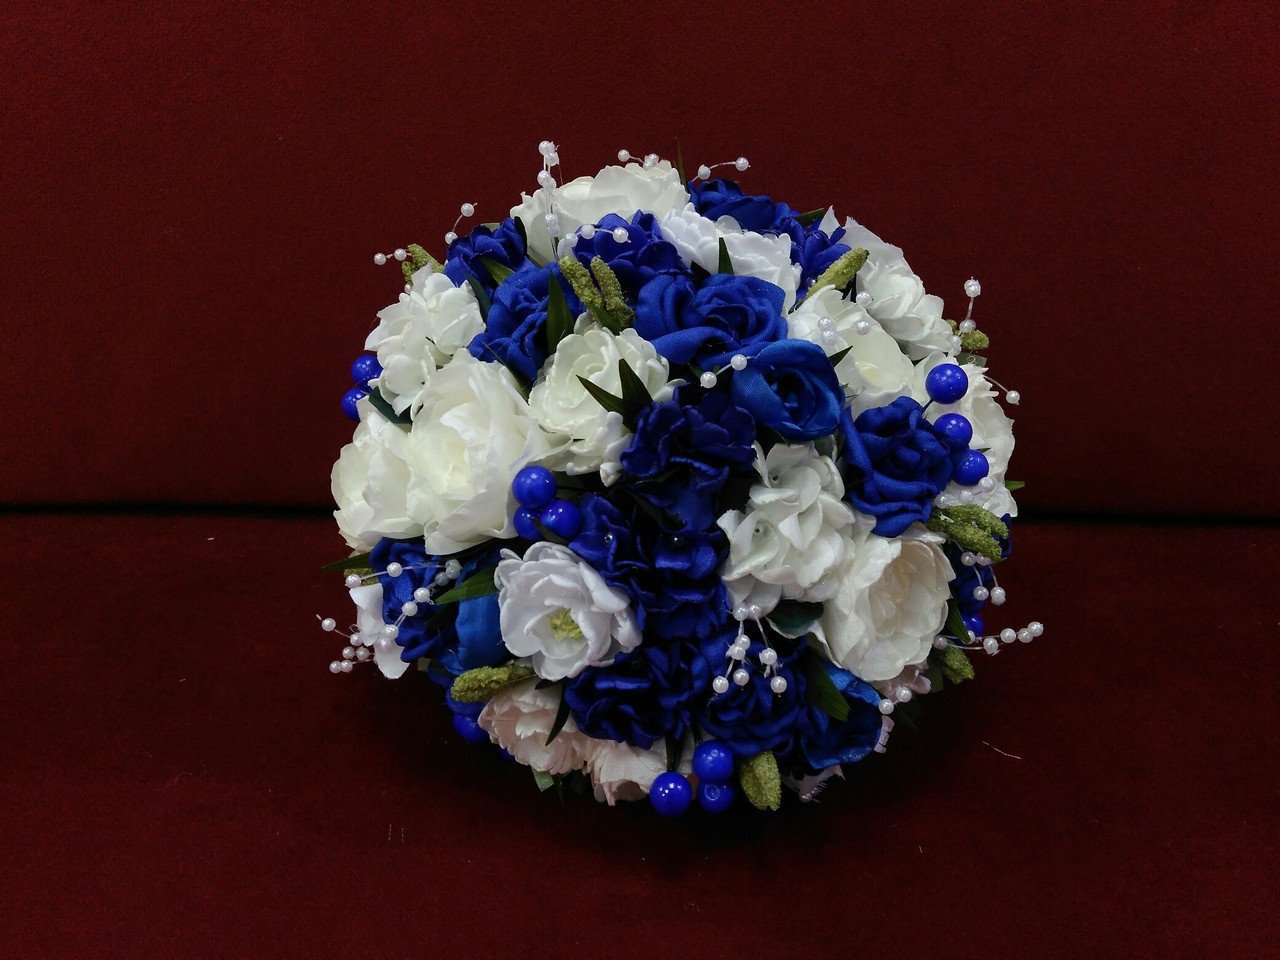 Blue bridal bouquet of artificial flowers